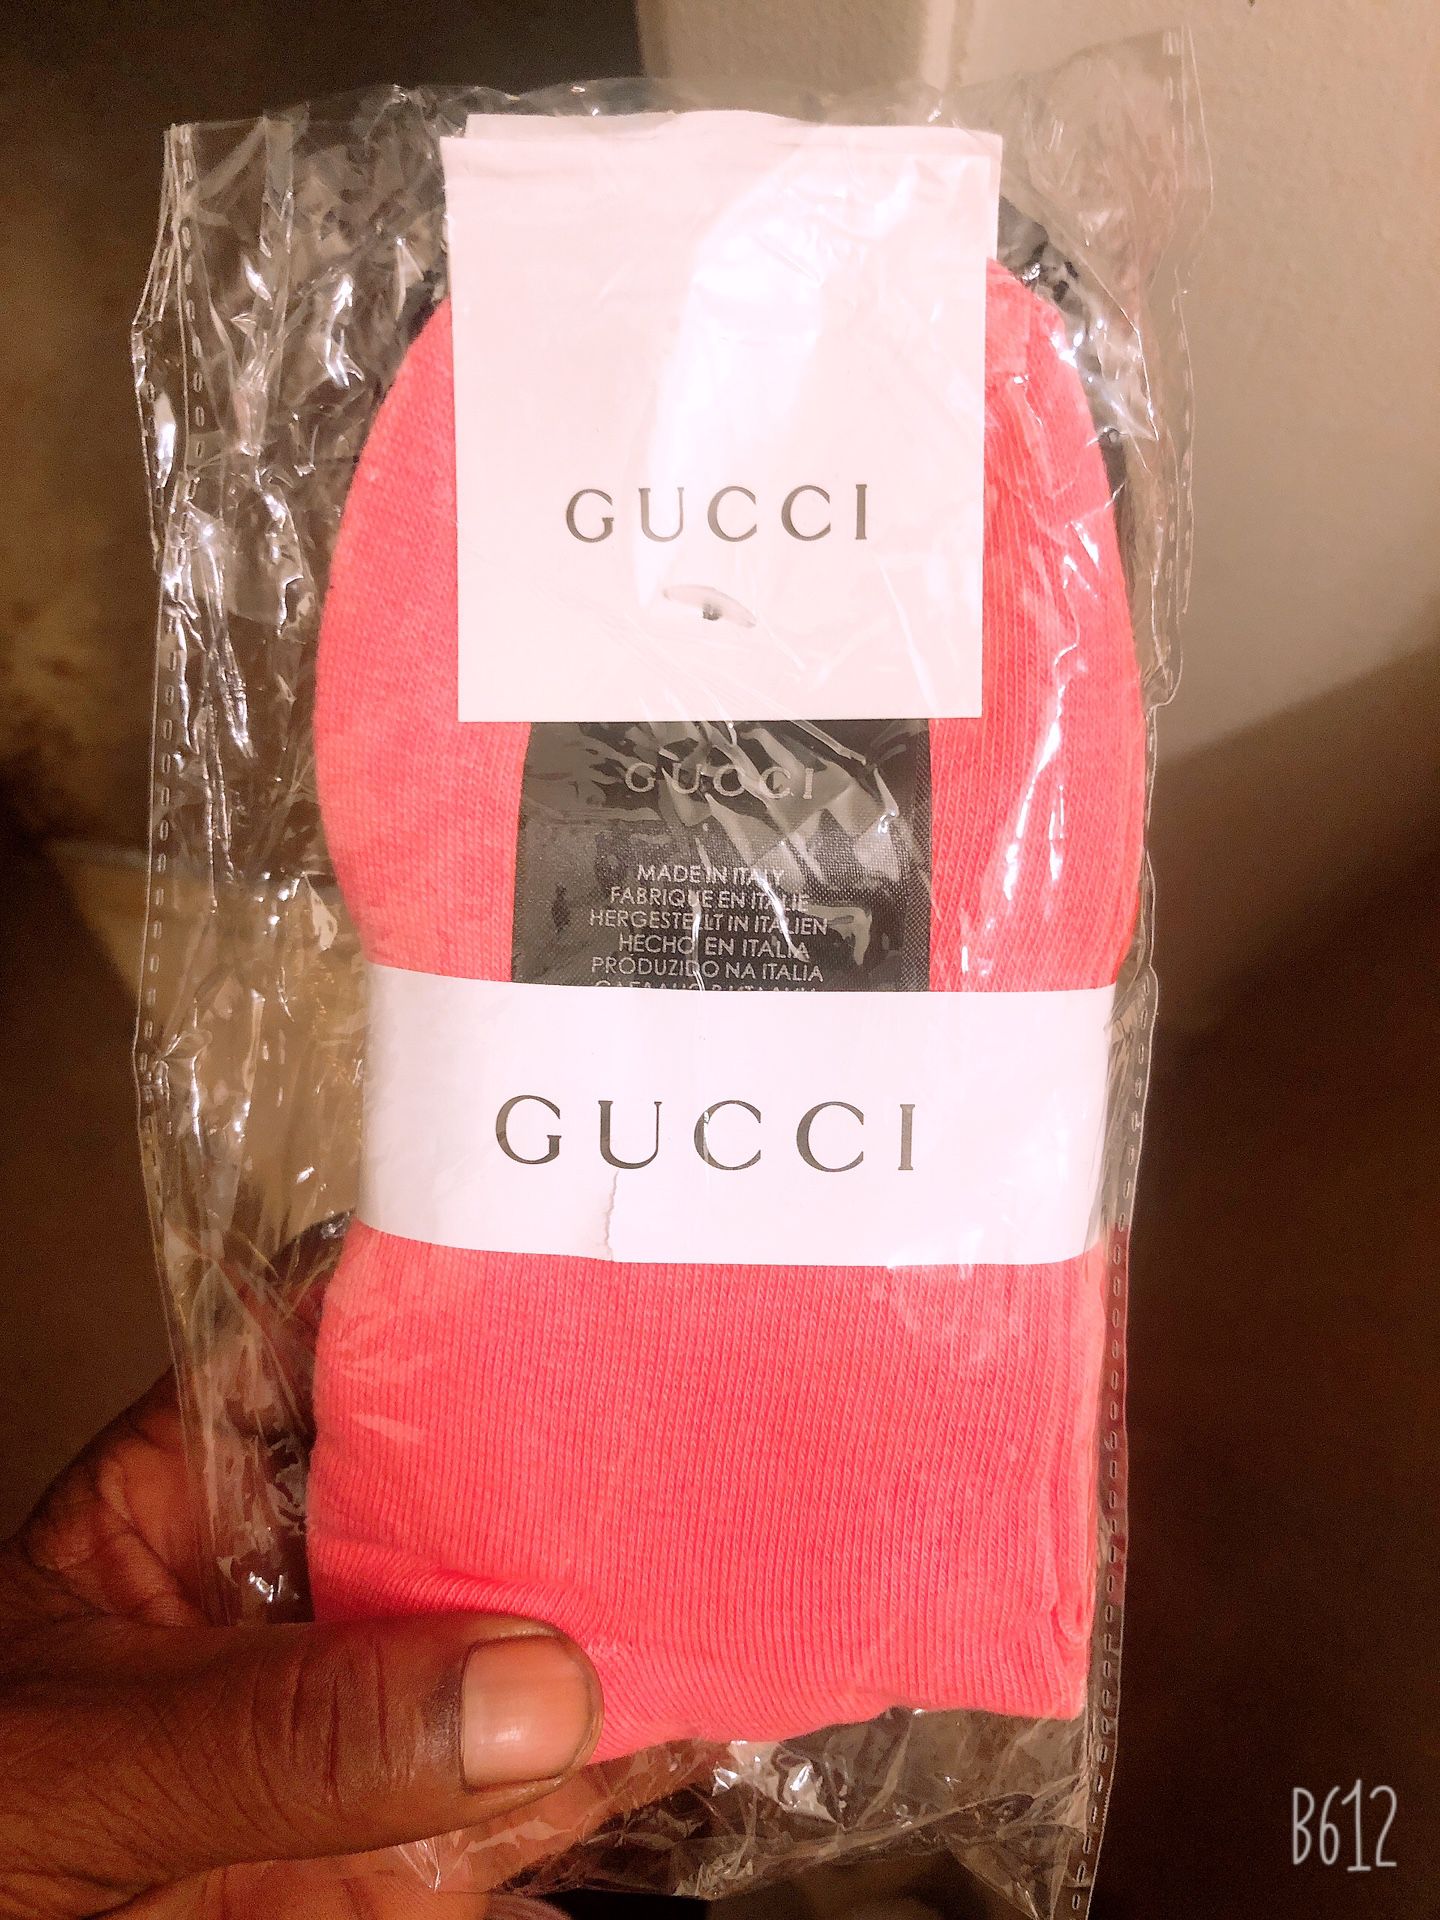 Gucci socks